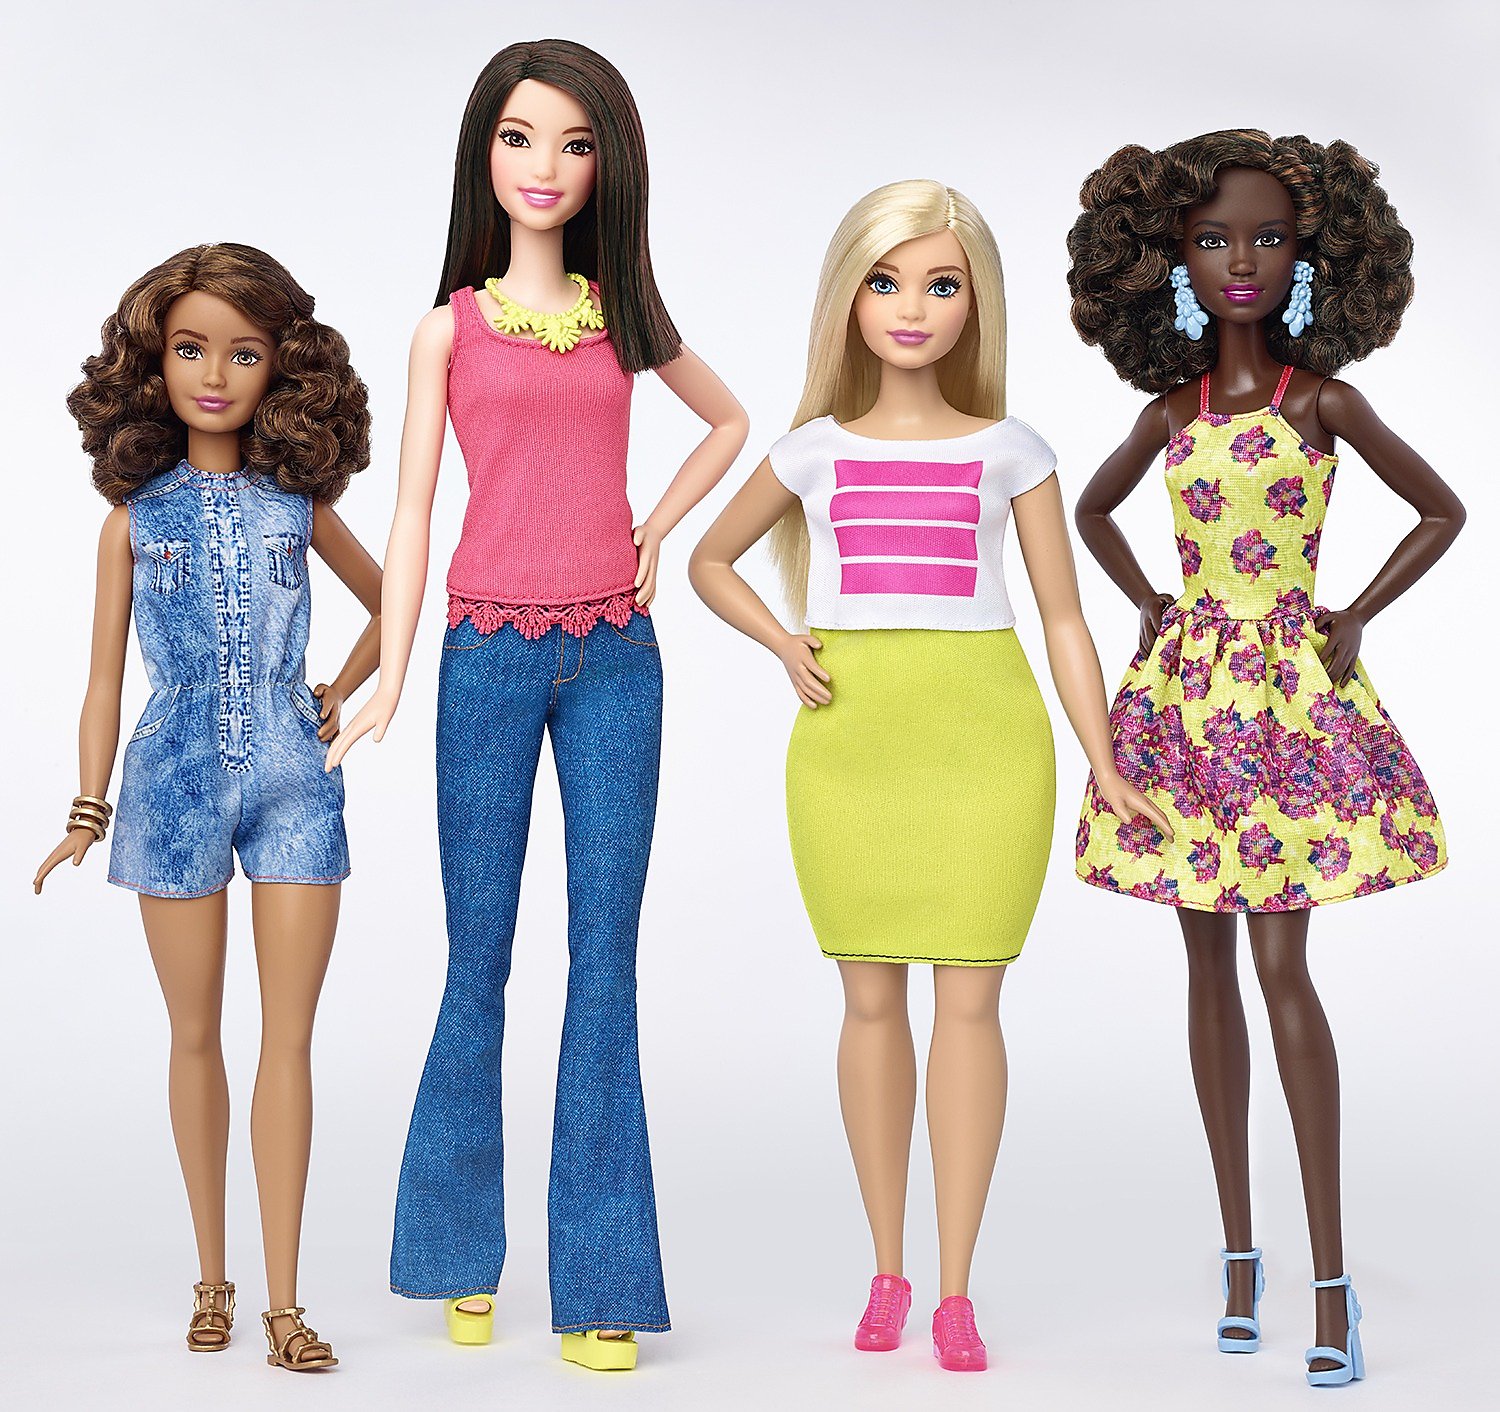 stijfheid Min wijsvinger Activists helped bring Barbie's new bodies to market